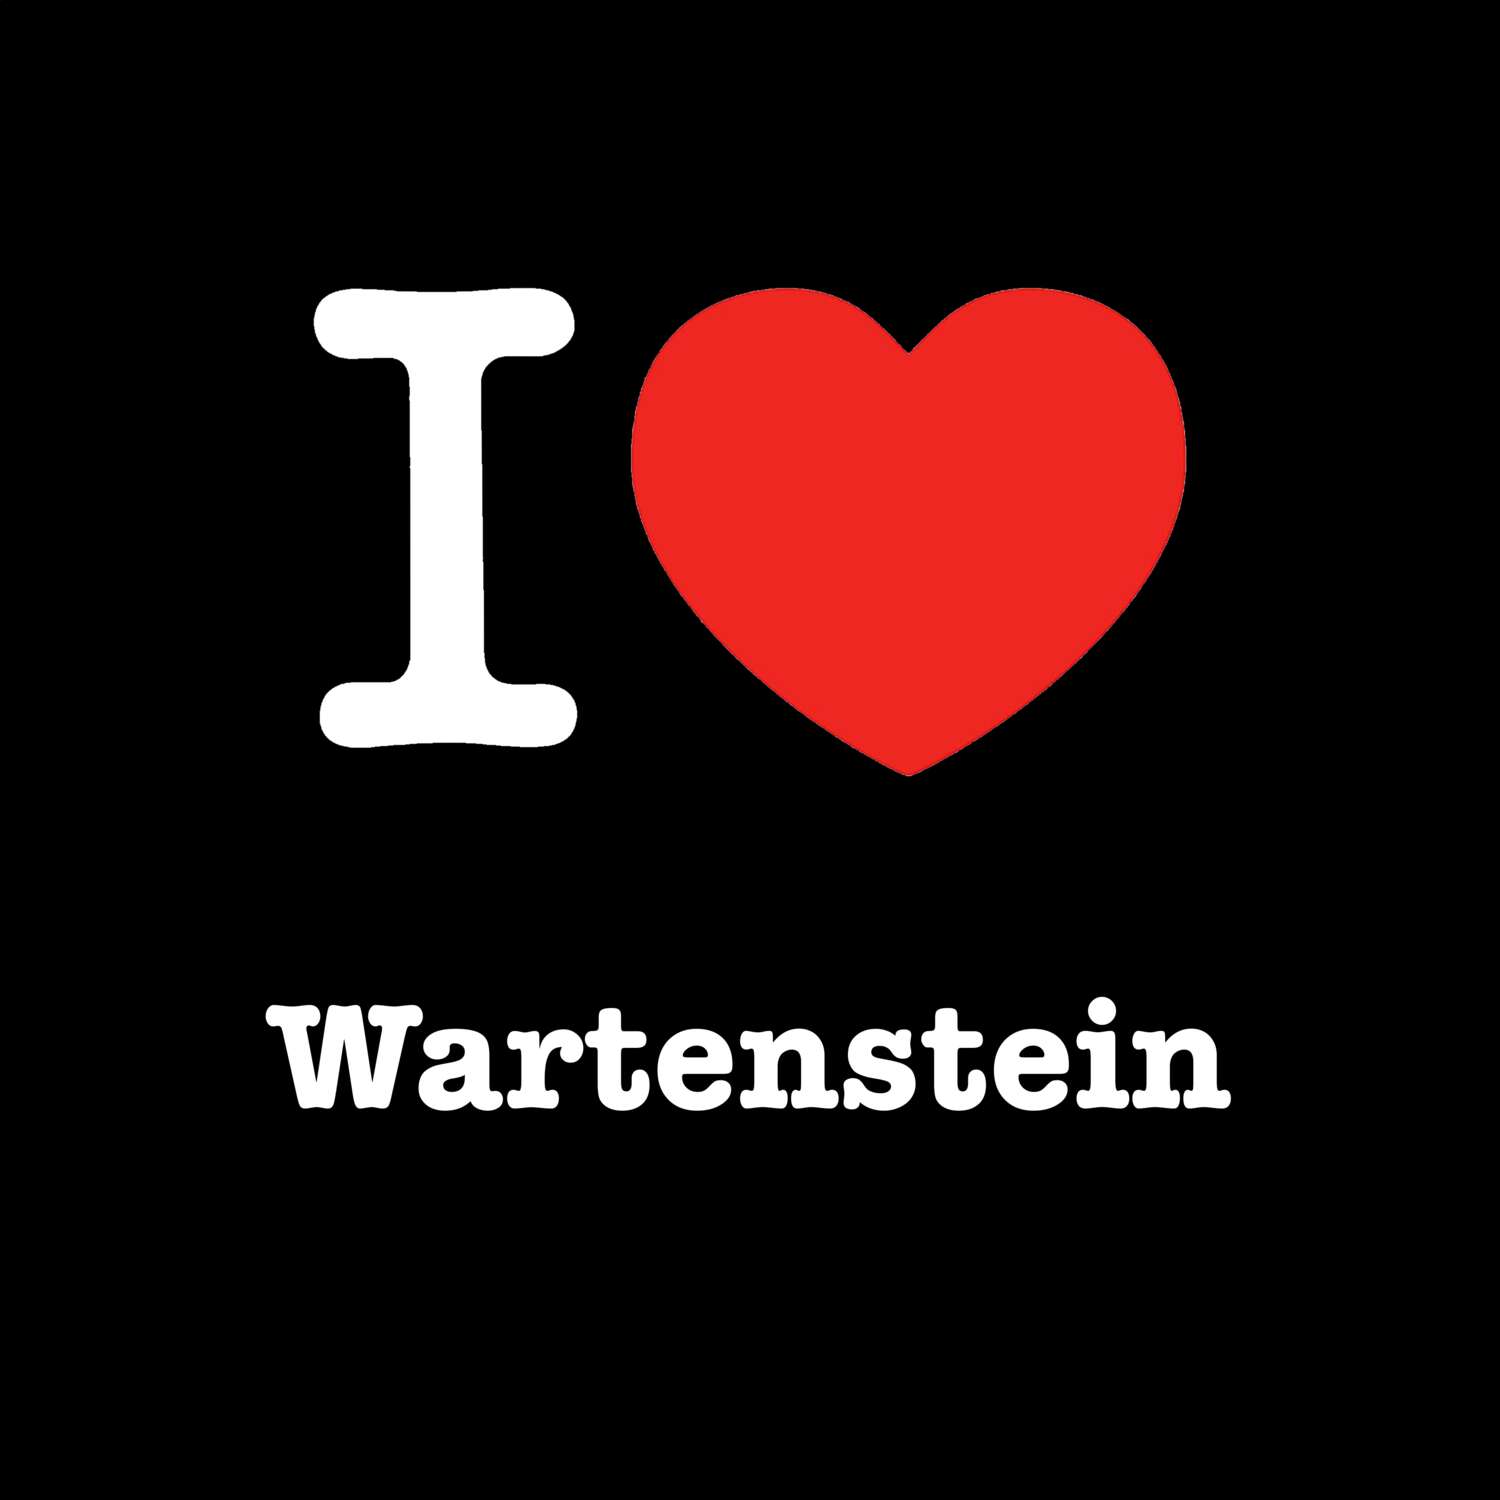 Wartenstein T-Shirt »I love«